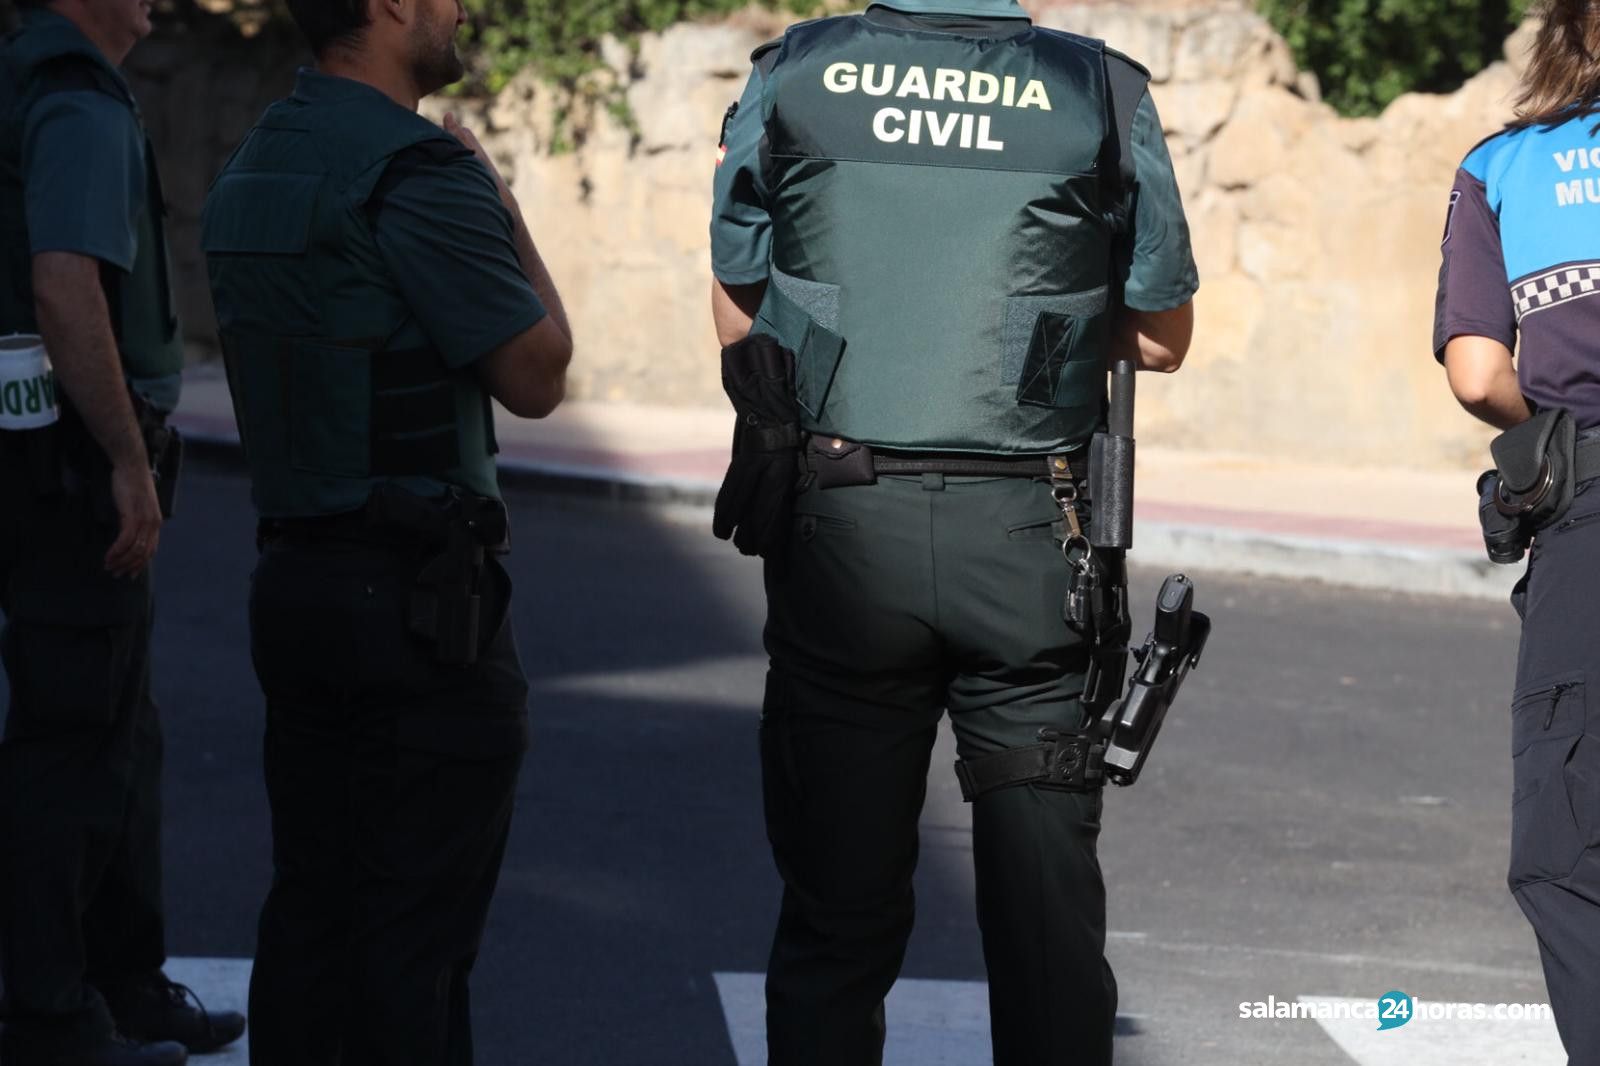  Guardia Civil en Villamayor 6 